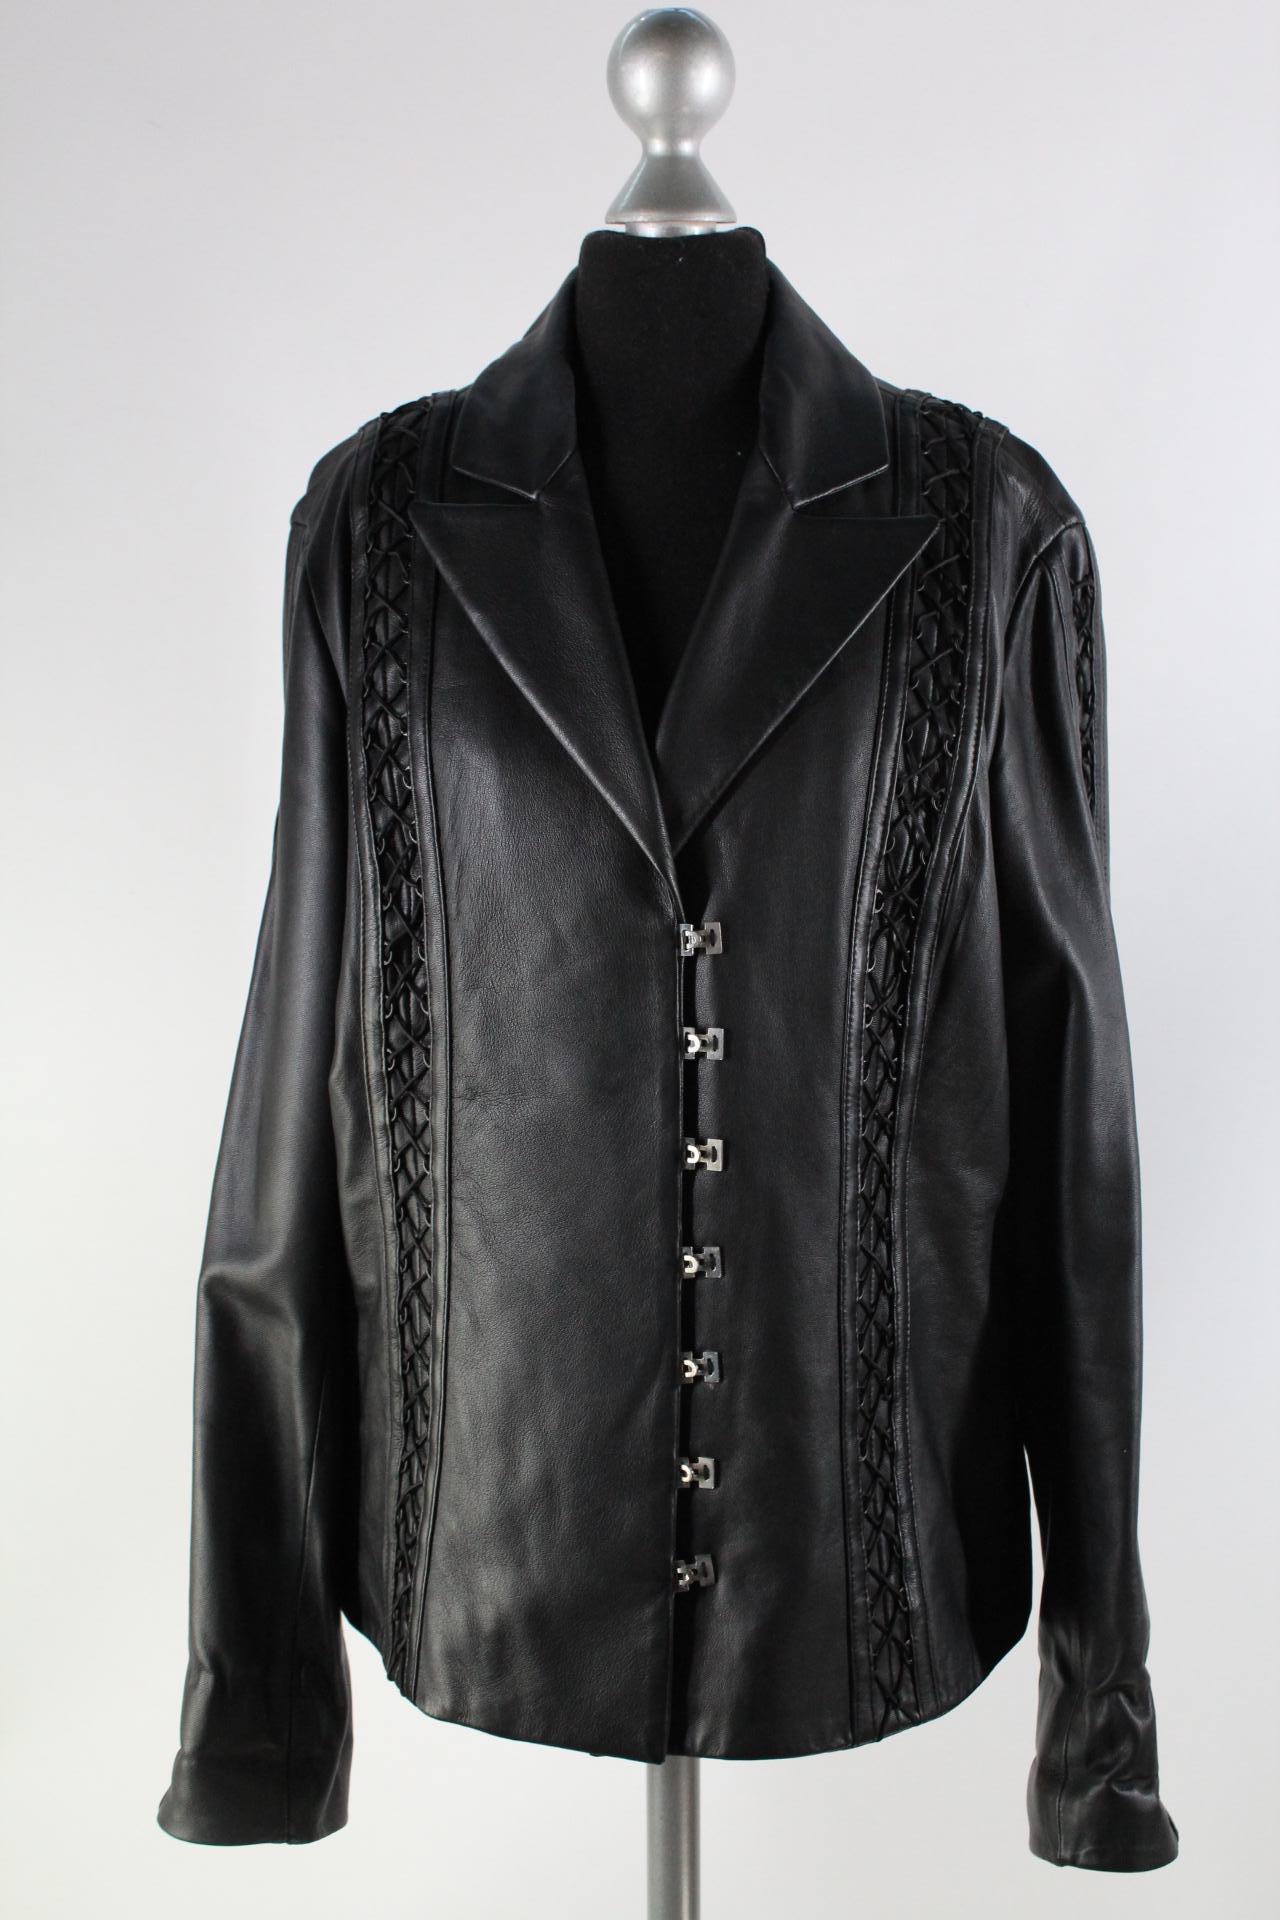 Biba Damen-Lederjacke schwarz Größe 42